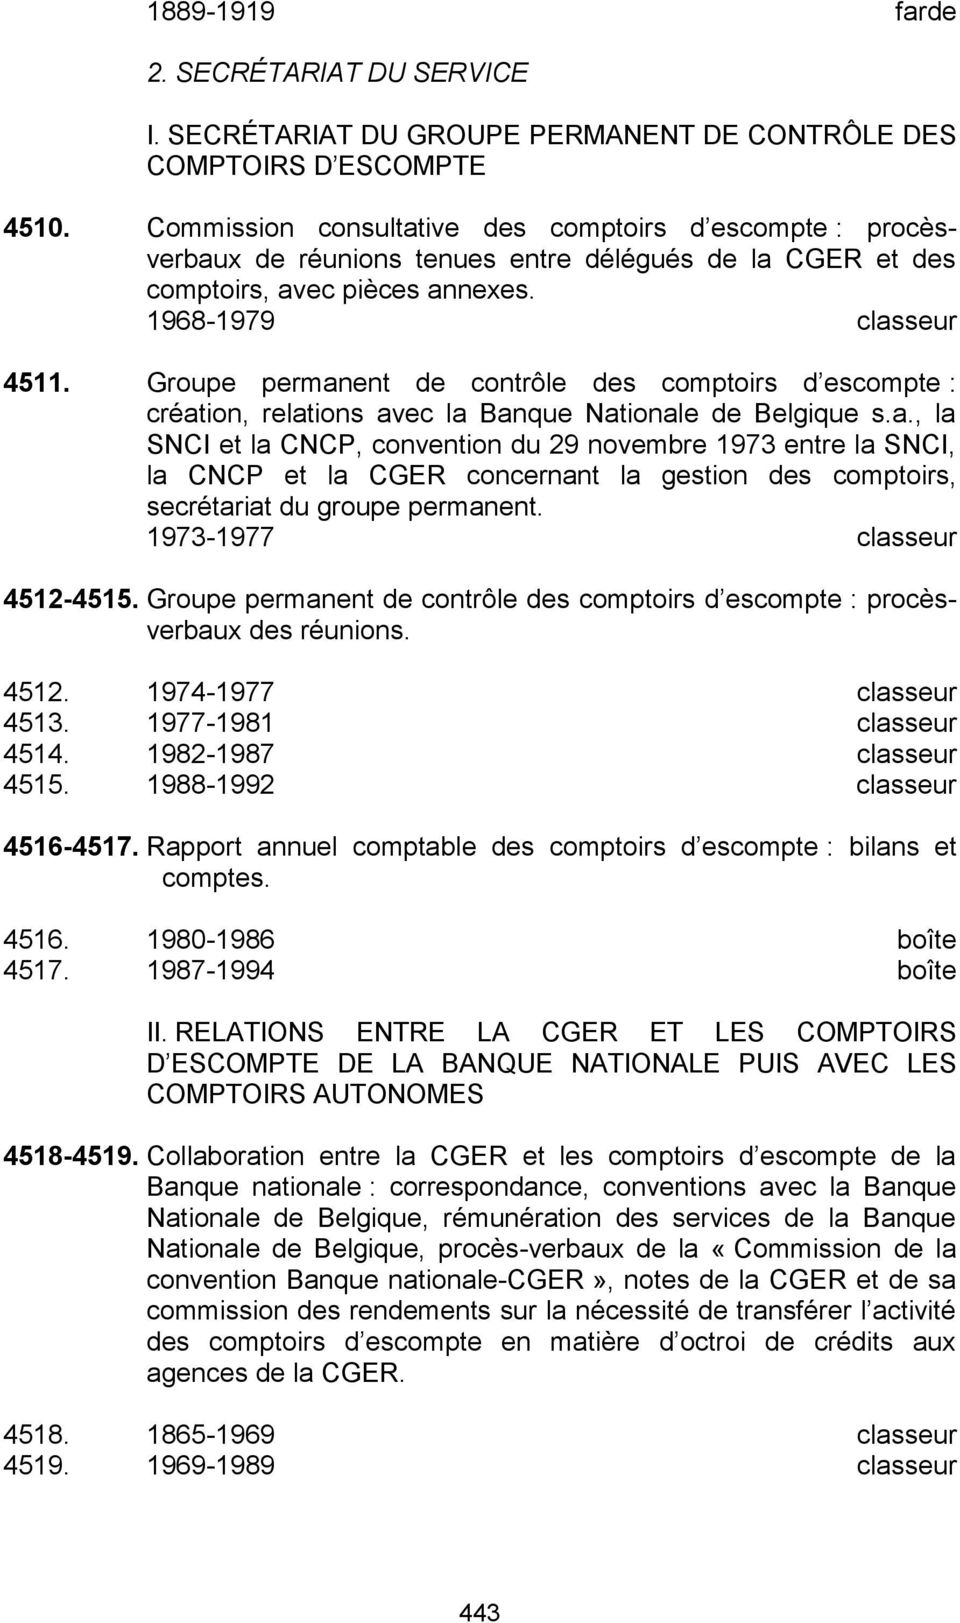 Groupe permanent de contrôle des comptoirs d escompte : création, relations avec la Banque Nationale de Belgique s.a., la SNCI et la CNCP, convention du 29 novembre 1973 entre la SNCI, la CNCP et la CGER concernant la gestion des comptoirs, secrétariat du groupe permanent.